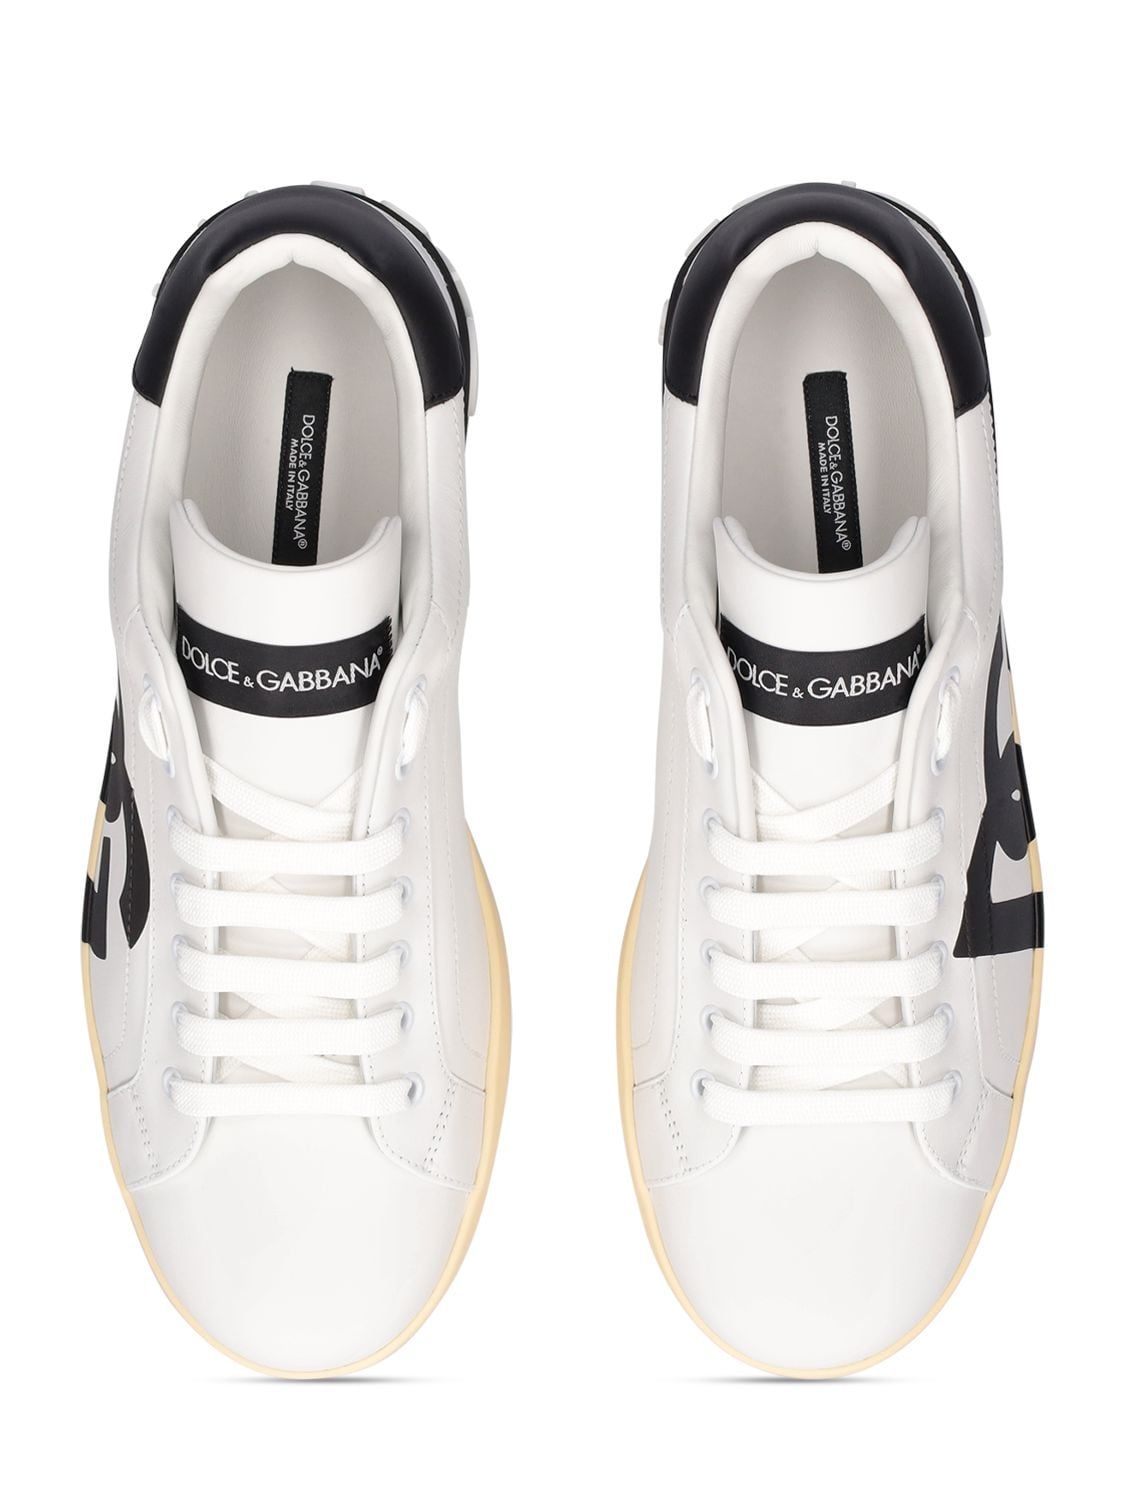 Shop Dolce & Gabbana Portofino Leather Low Sneakers In White,black